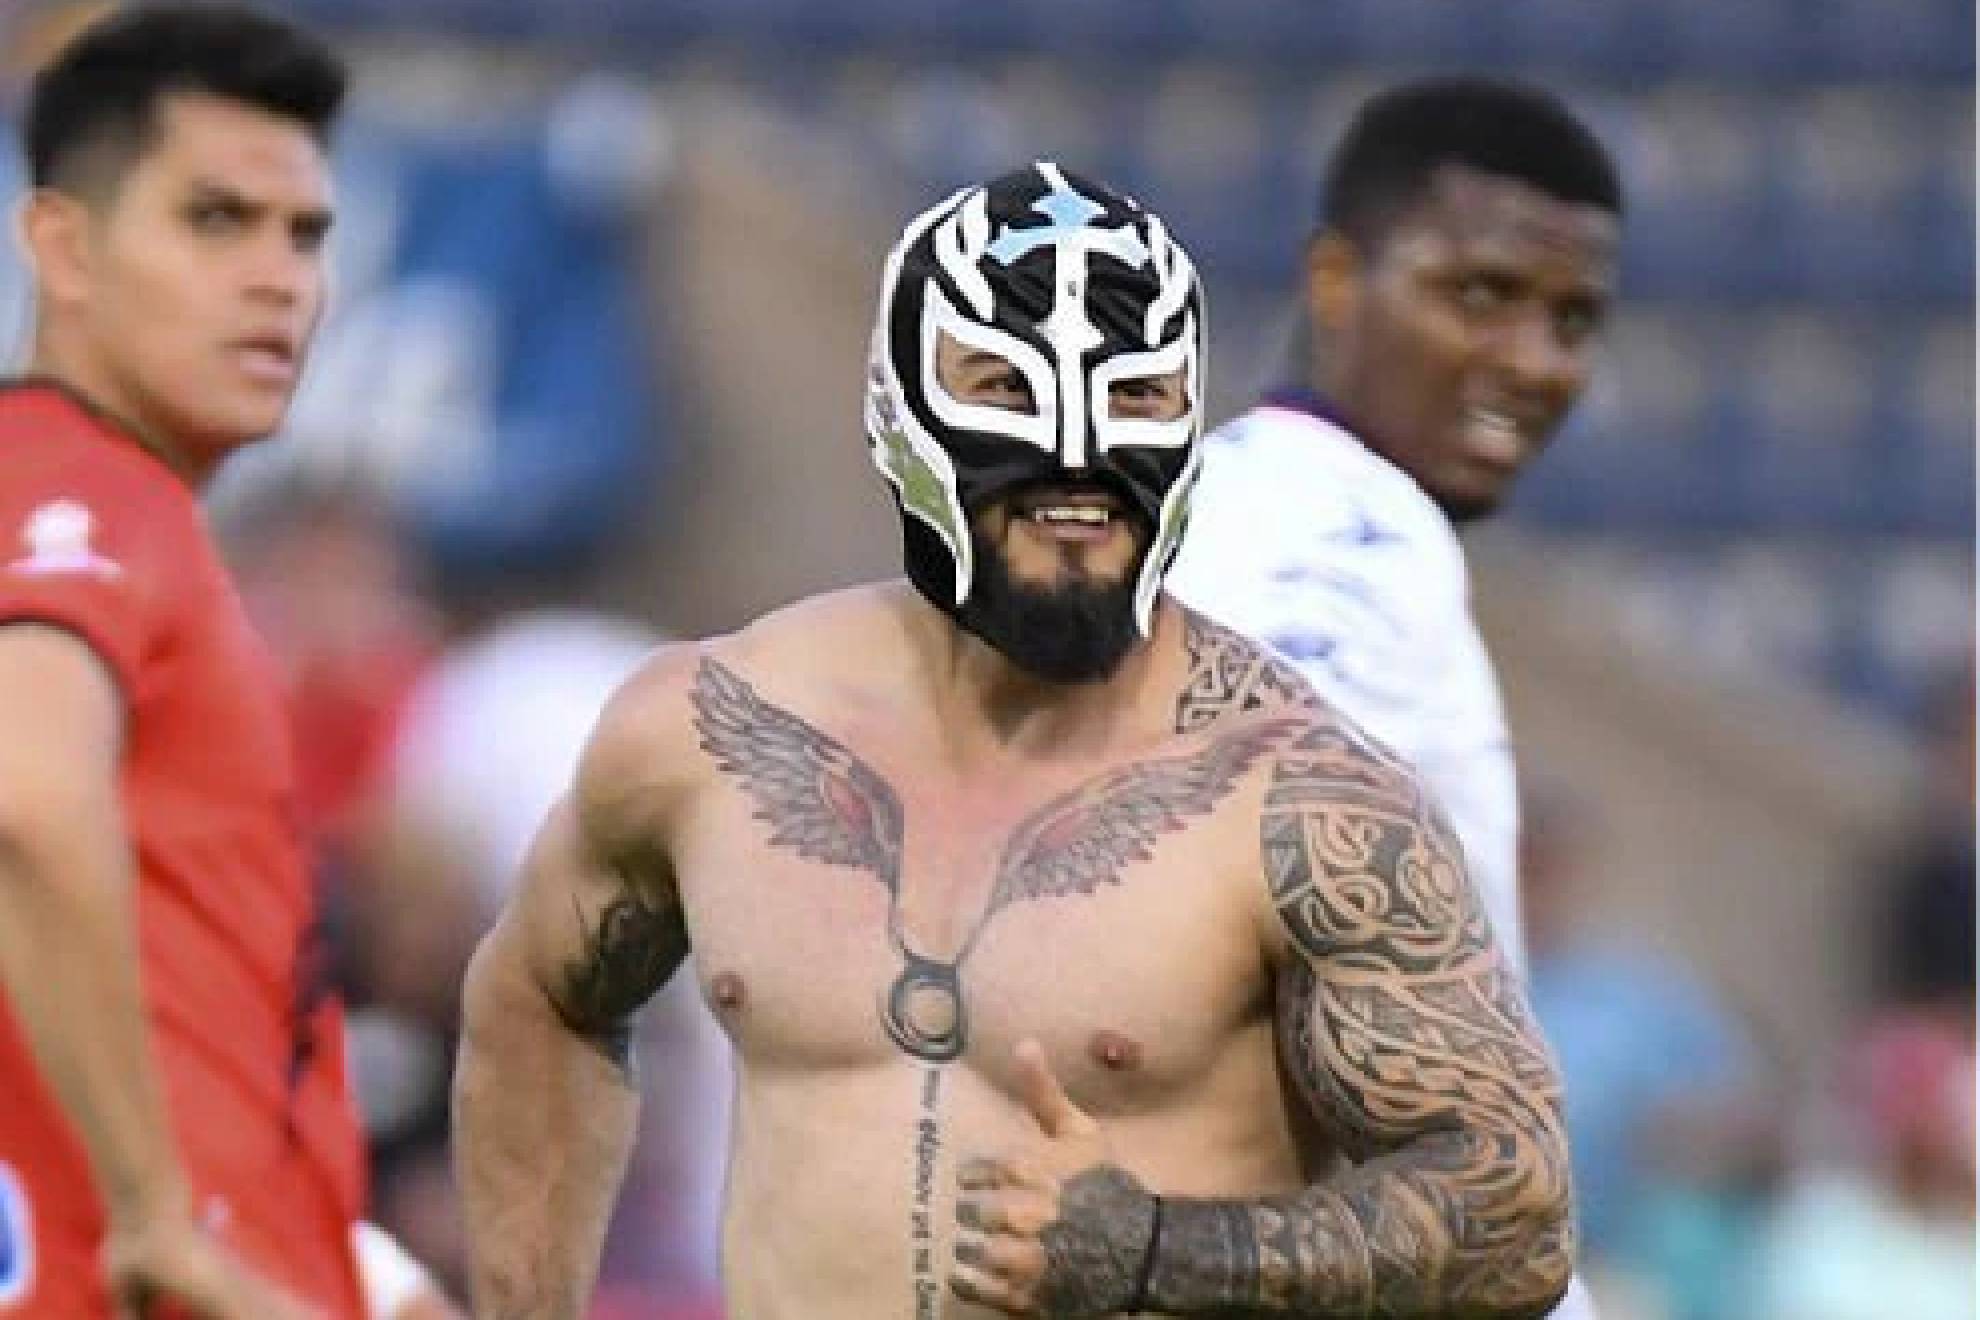 El espontáneo con su máscara de Rey Mysterio Jr. en la cancha del Tepa Gómez.